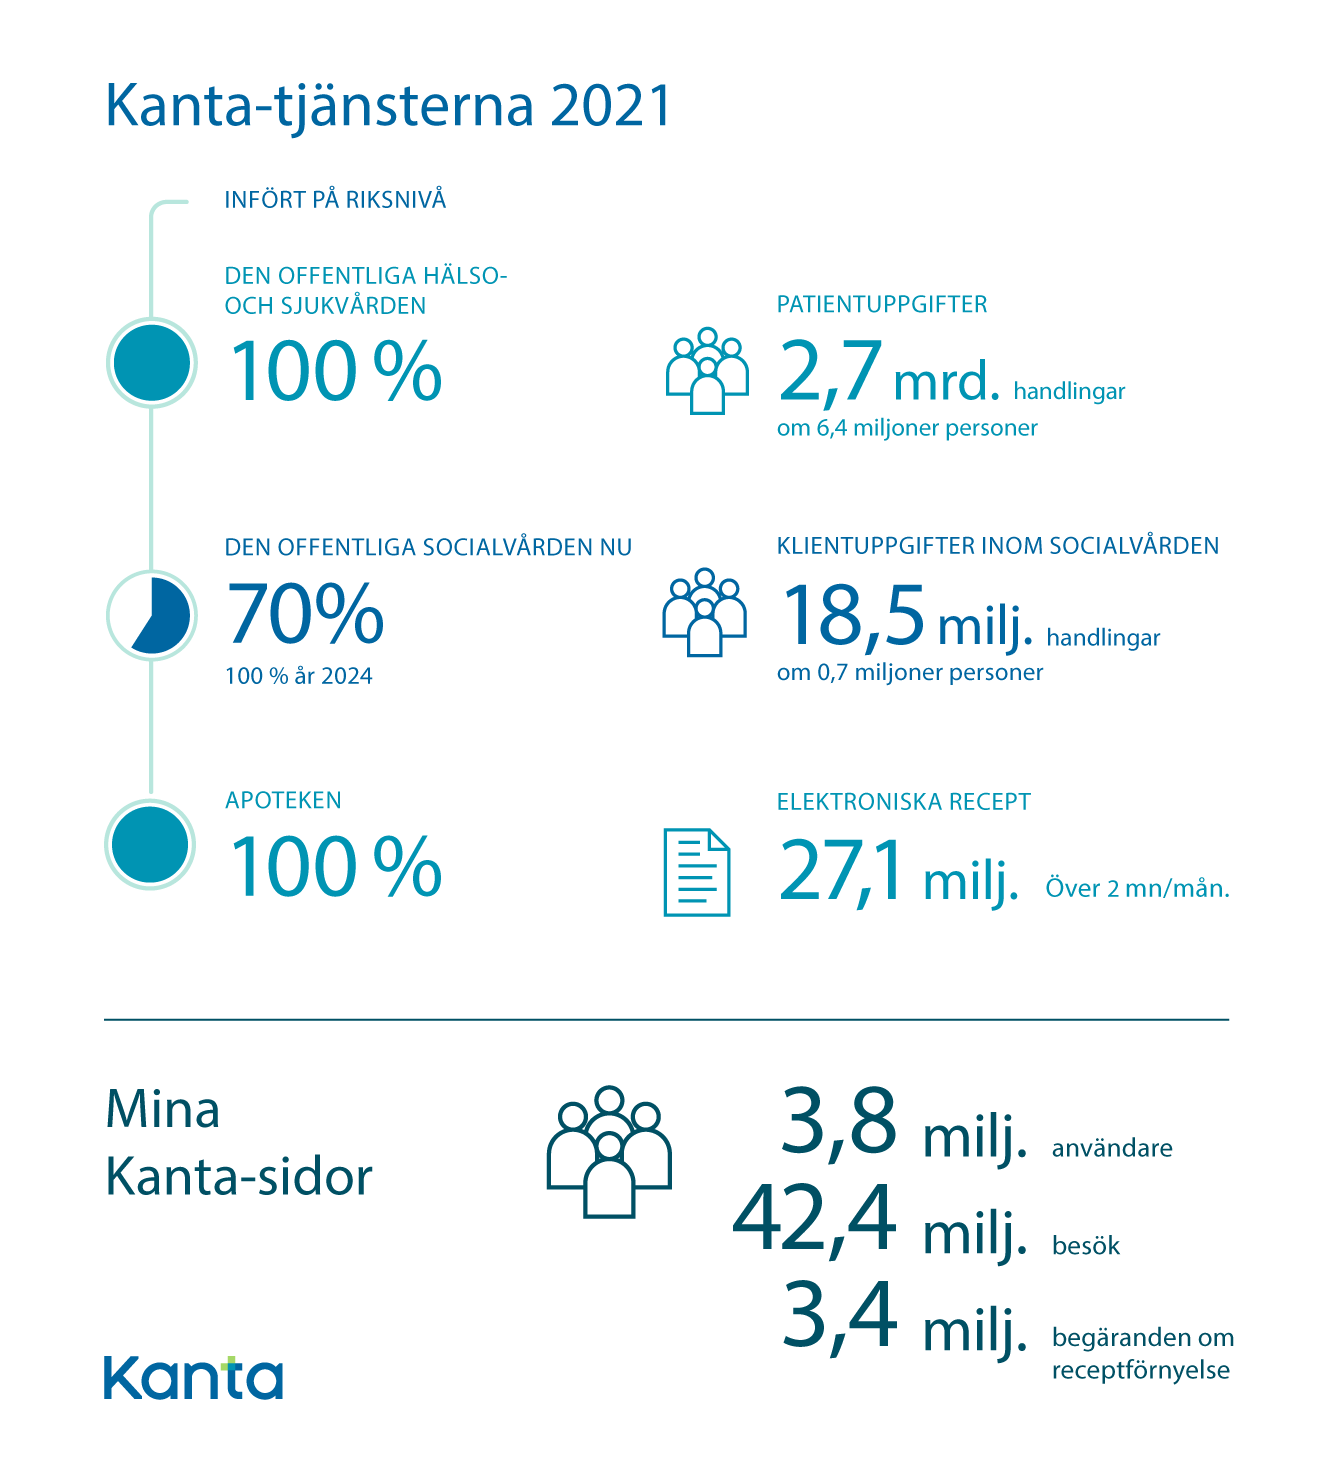 Kanta-tjänsterna nyckeltal 2021